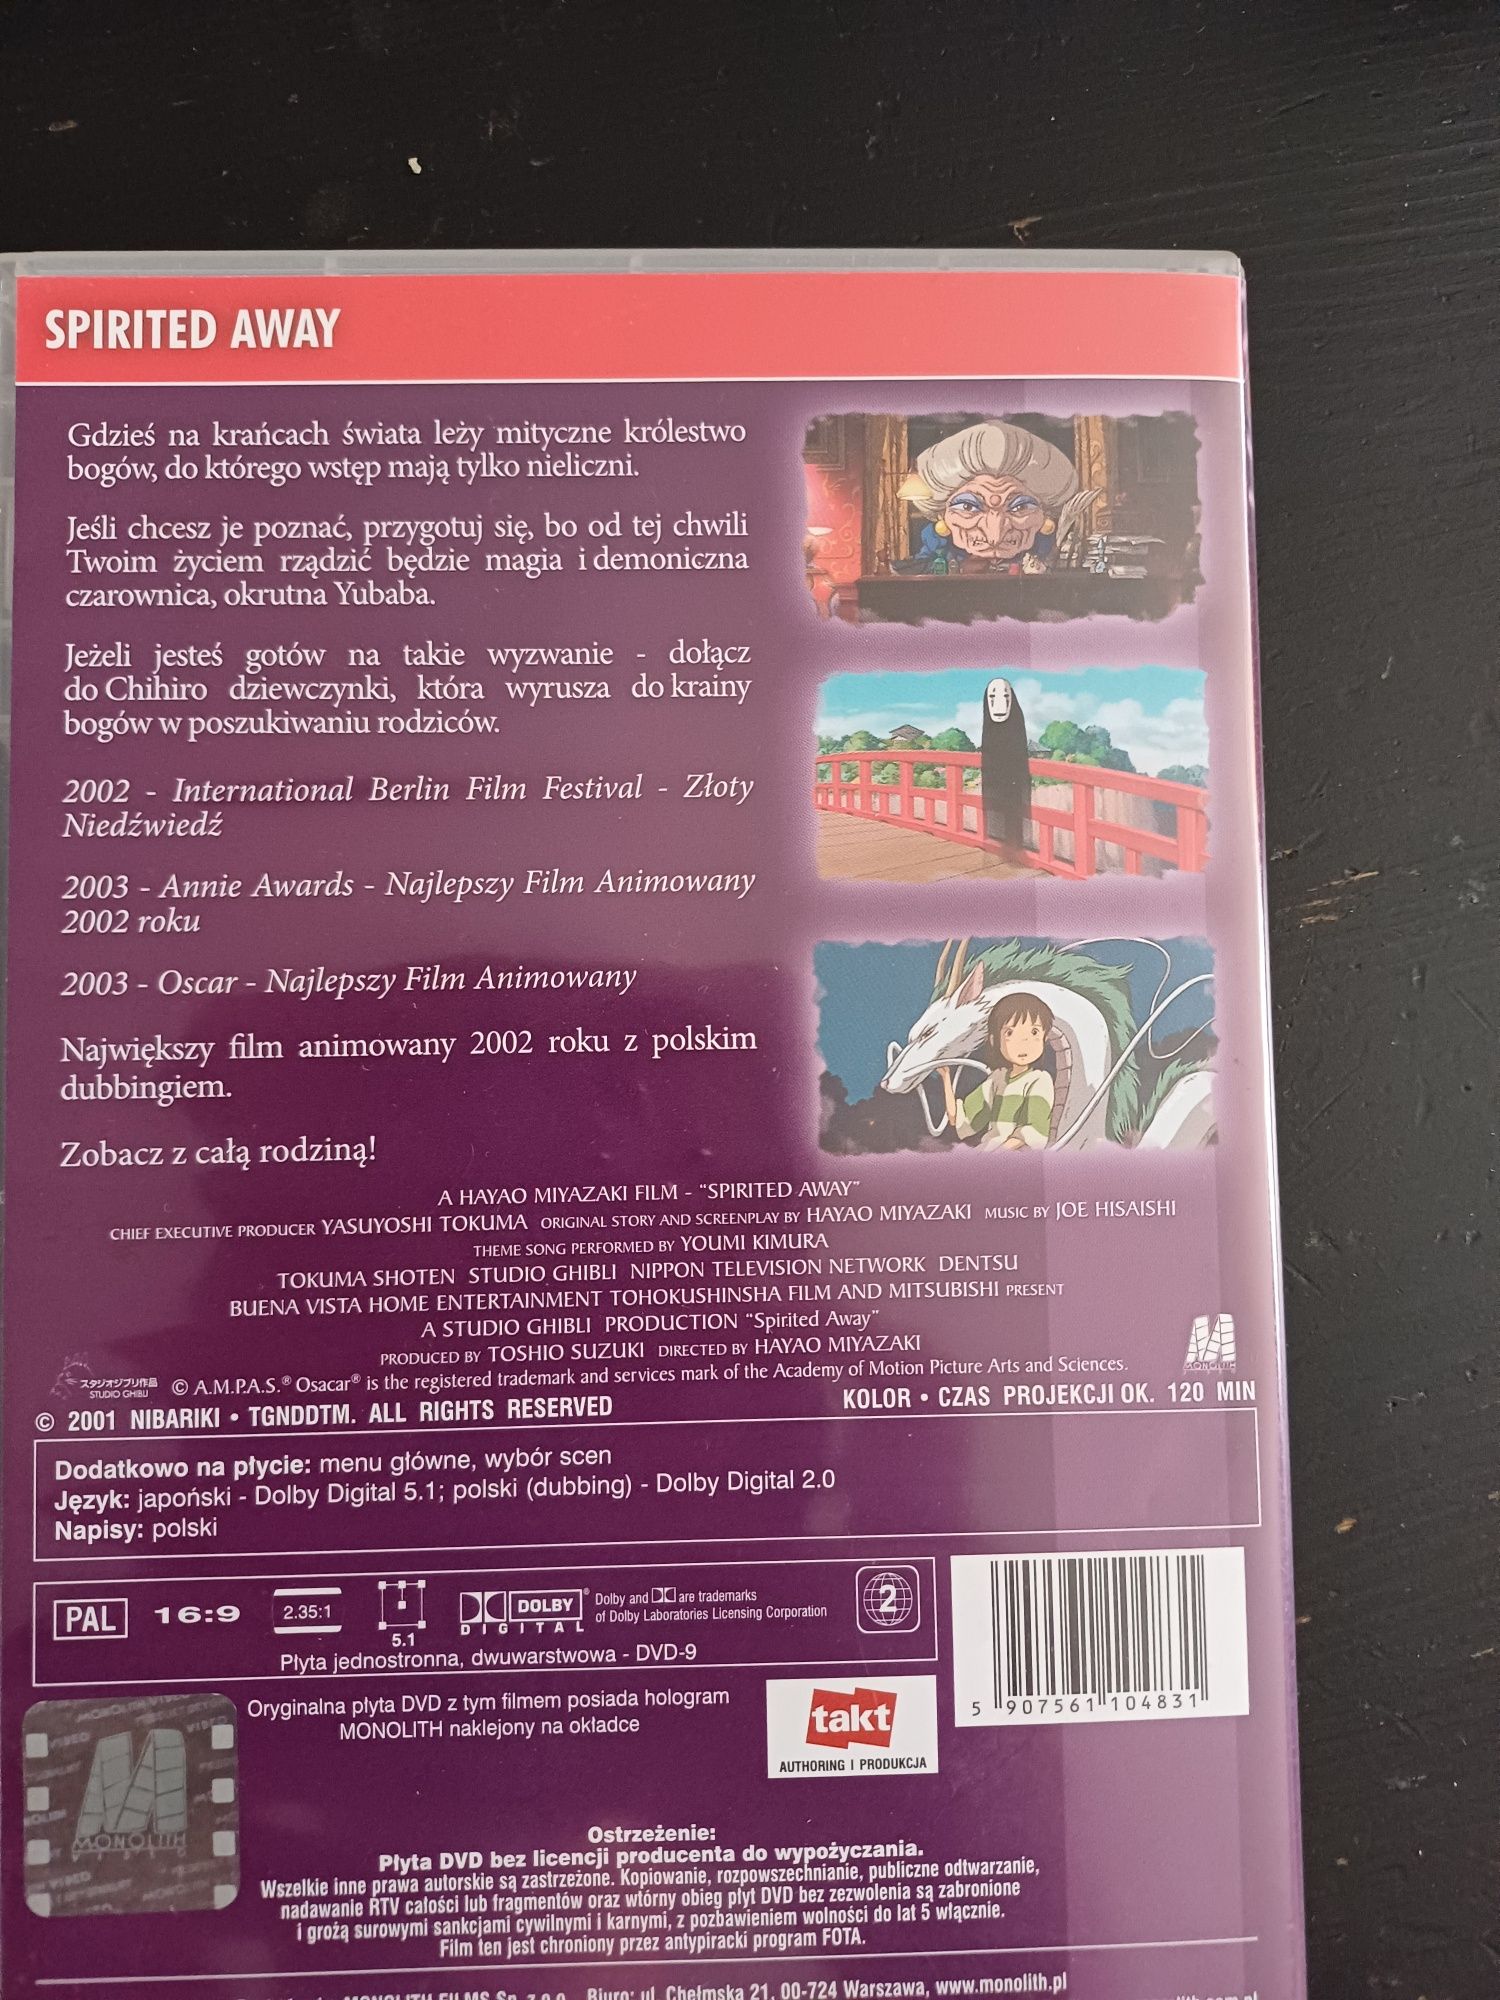 Spirited Away-W krainie bogów dvd